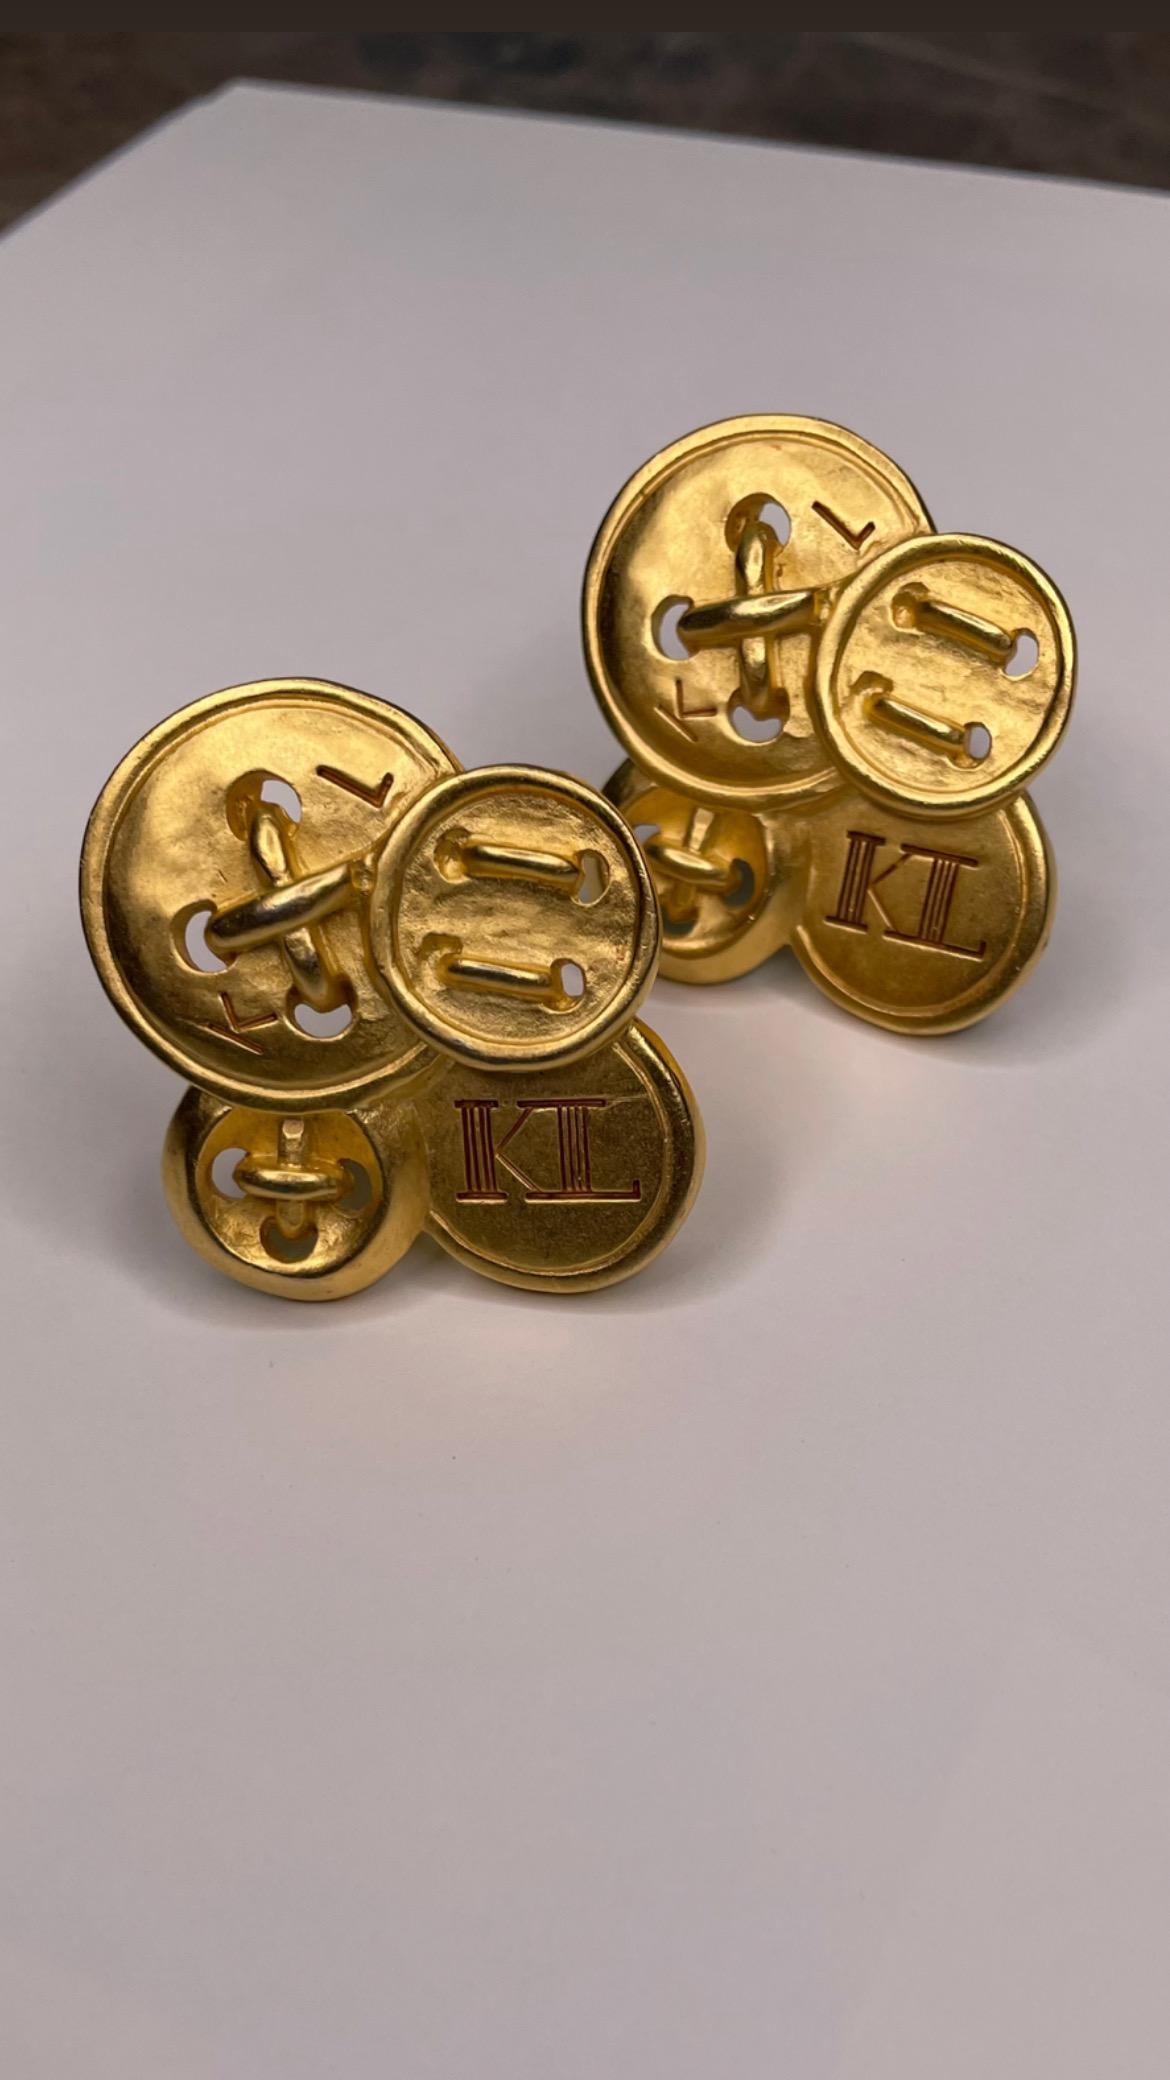 Karl Lagerfeld goldfarbene, mattierte Ohrringe mit KL-Logo im Clip-On-Stil.

Unterschrieben.

Zeitraum: 1990s

Zustand: Ausgezeichnet. 
Länge: 4 cm
Breite: 4 cm


........Zusätzliche Informationen ........

- Das Foto kann sich aufgrund der